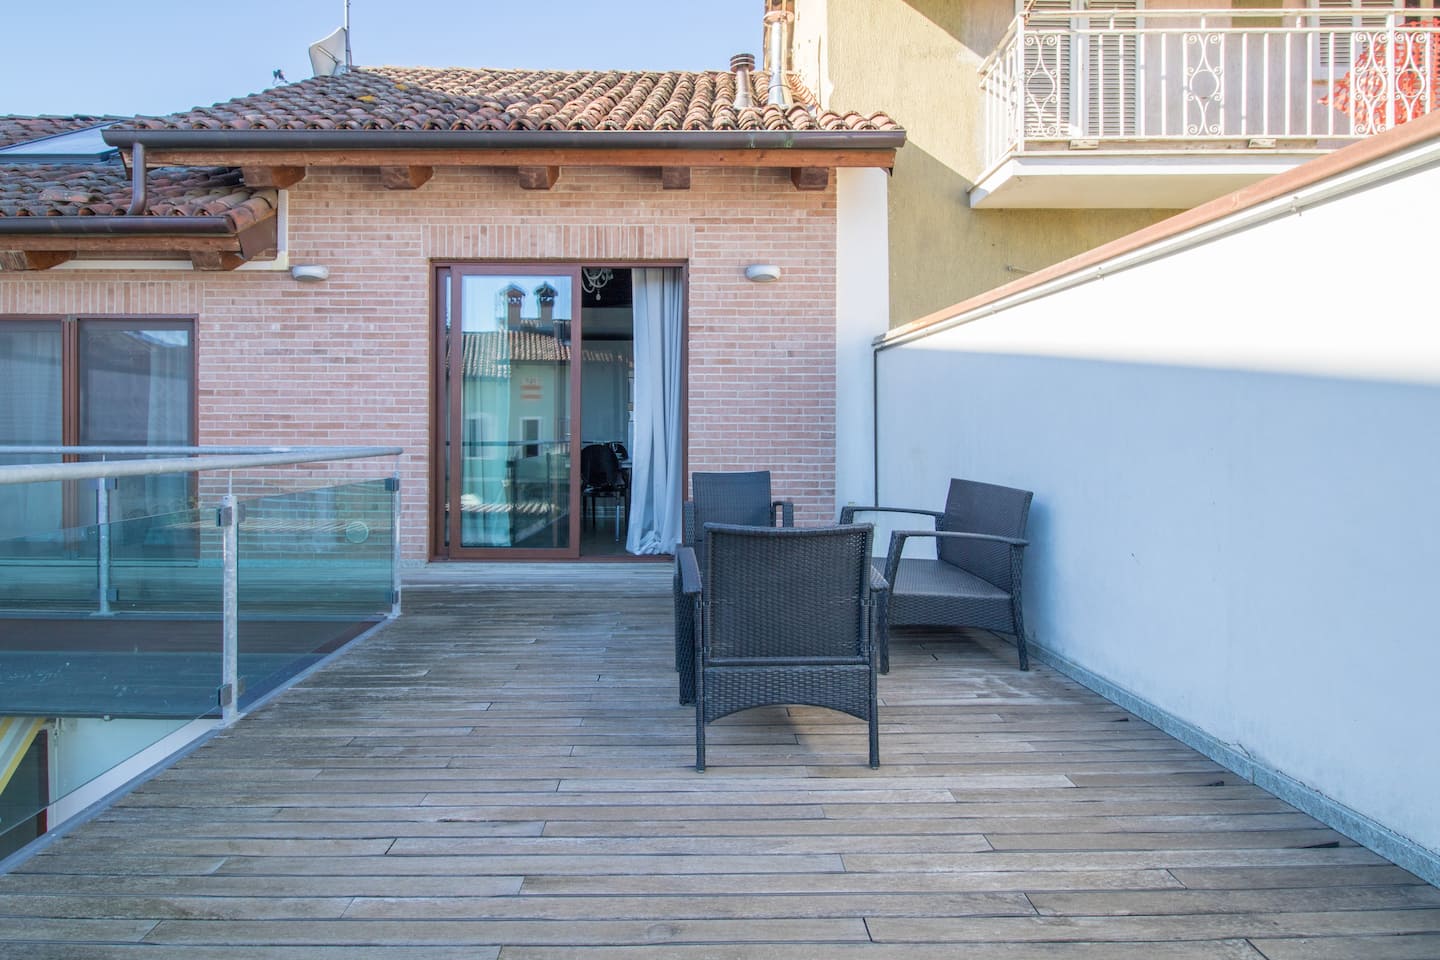 Geräumige Terrasse für einen Aperitif zwischen den Dächern von La La Land Haus, die Vayadù-Wohnung in Genola